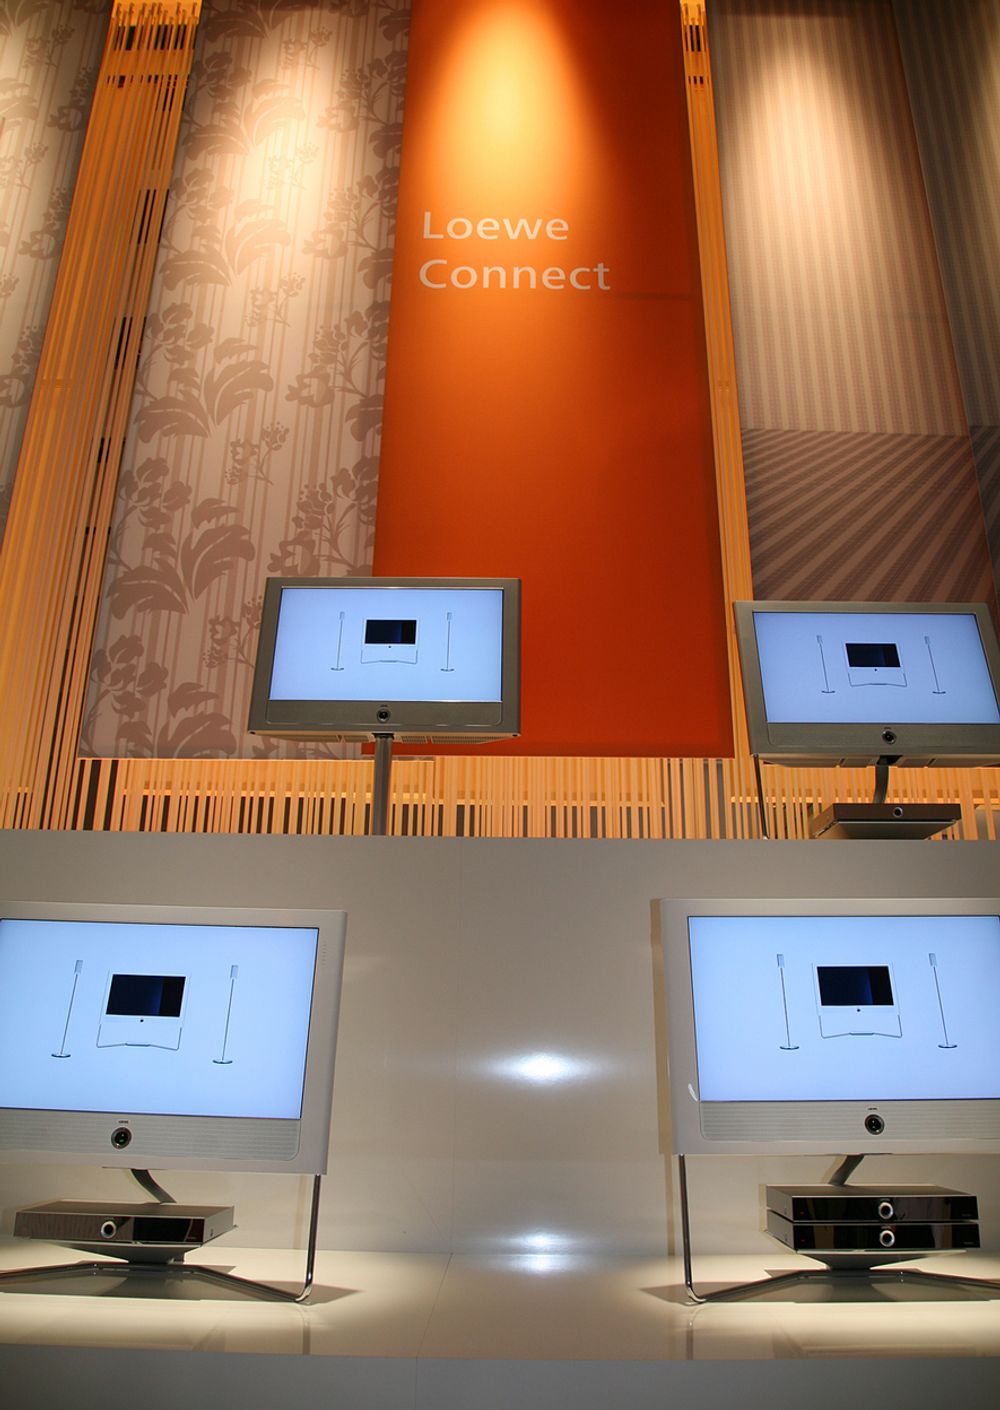 Loewe lanserte sitt nye Connect-system, som har innebygget trådløst wlan-kort og leveres med integrert mediacenter.